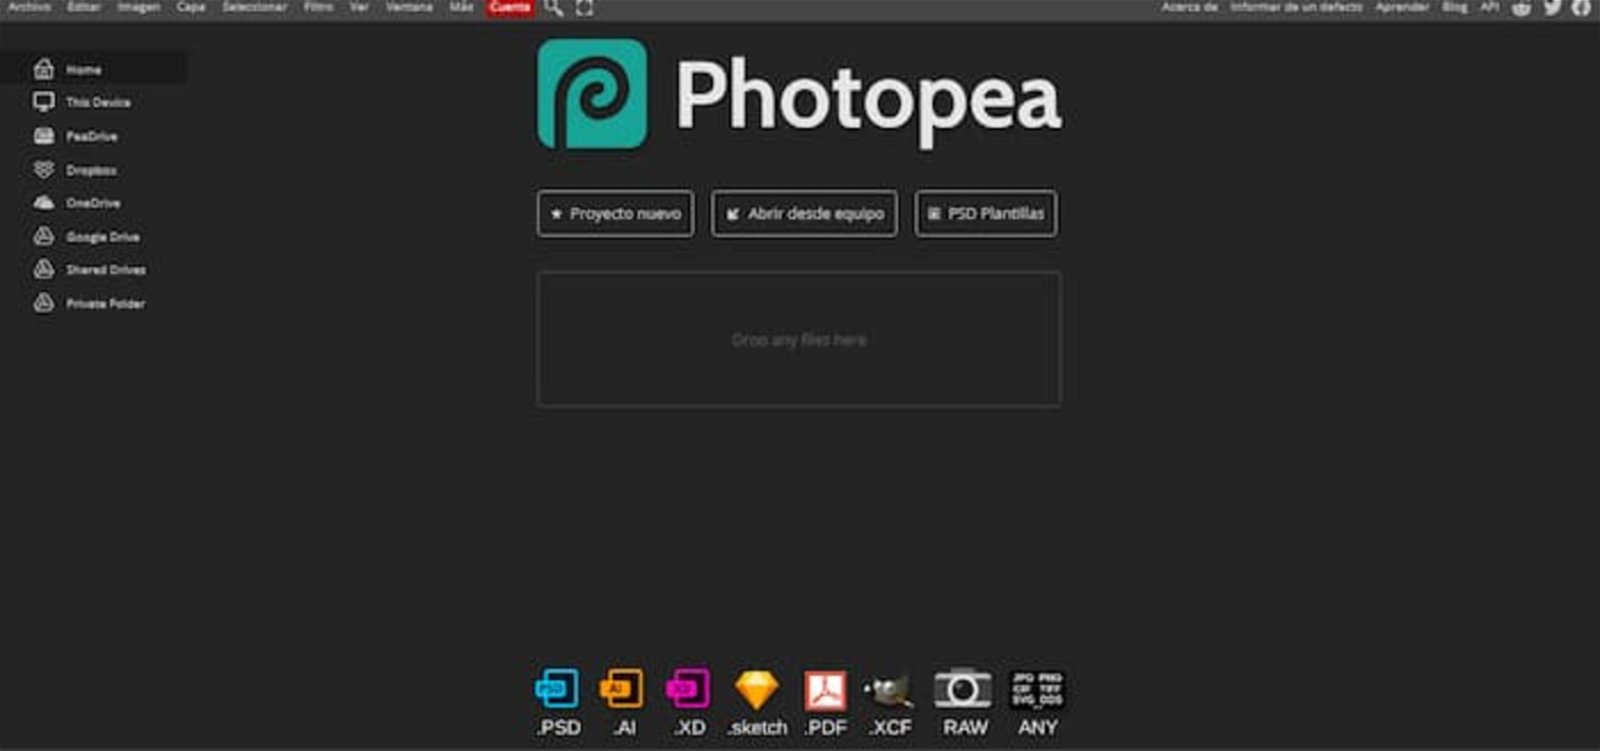 Photopea se ha convertido en una de las mejores alternativas a Photoshop y es una herramienta muy completa para crear infografías y otros proyectos